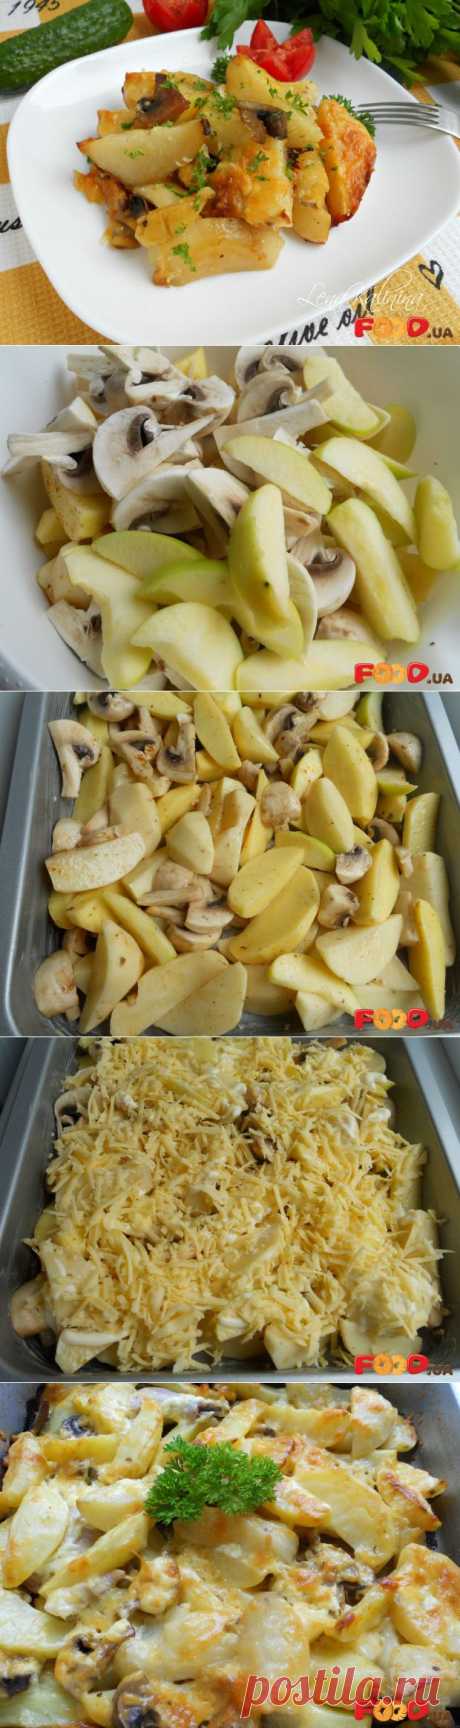 Картофель по-французски с грибами и яблоками - Кулинарные рецепты на Food.ua